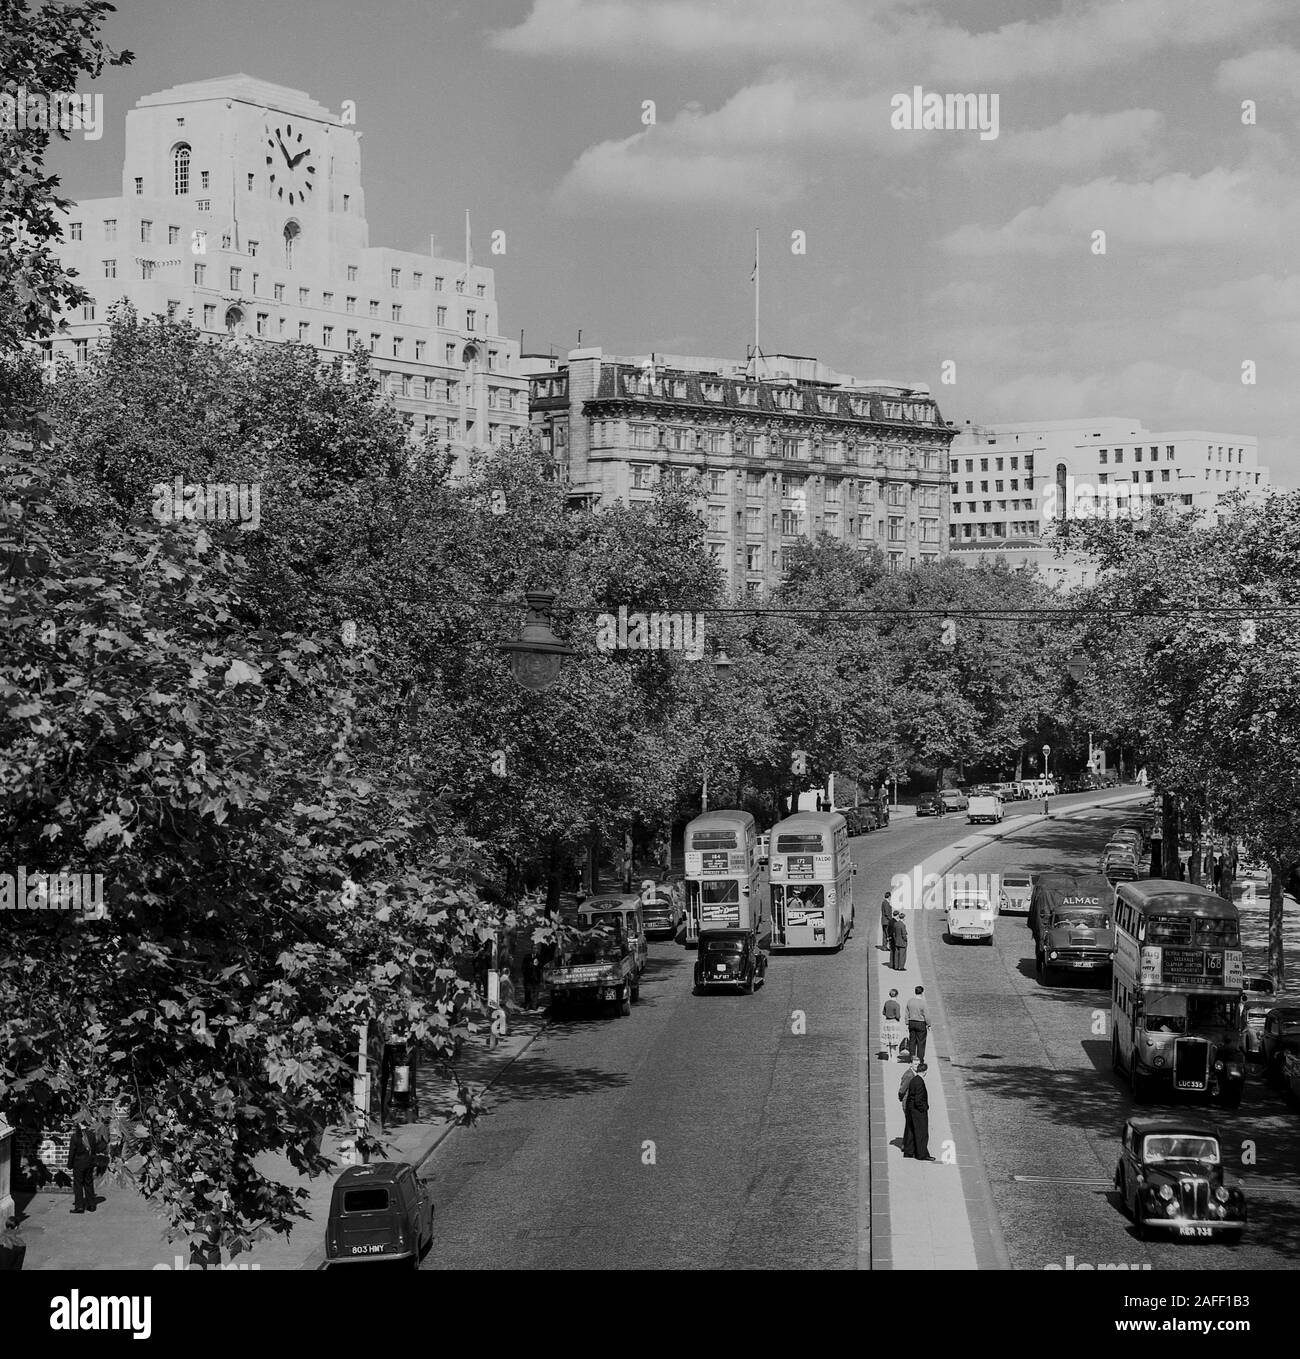 1960er Jahre, historisch, Victoria Embarkment, London, England, Großbritannien, zeigt die Autos und routemaster-Busse der damaligen Zeit. Mit Blick auf die Straße, Shelll Mex Haus. Stockfoto